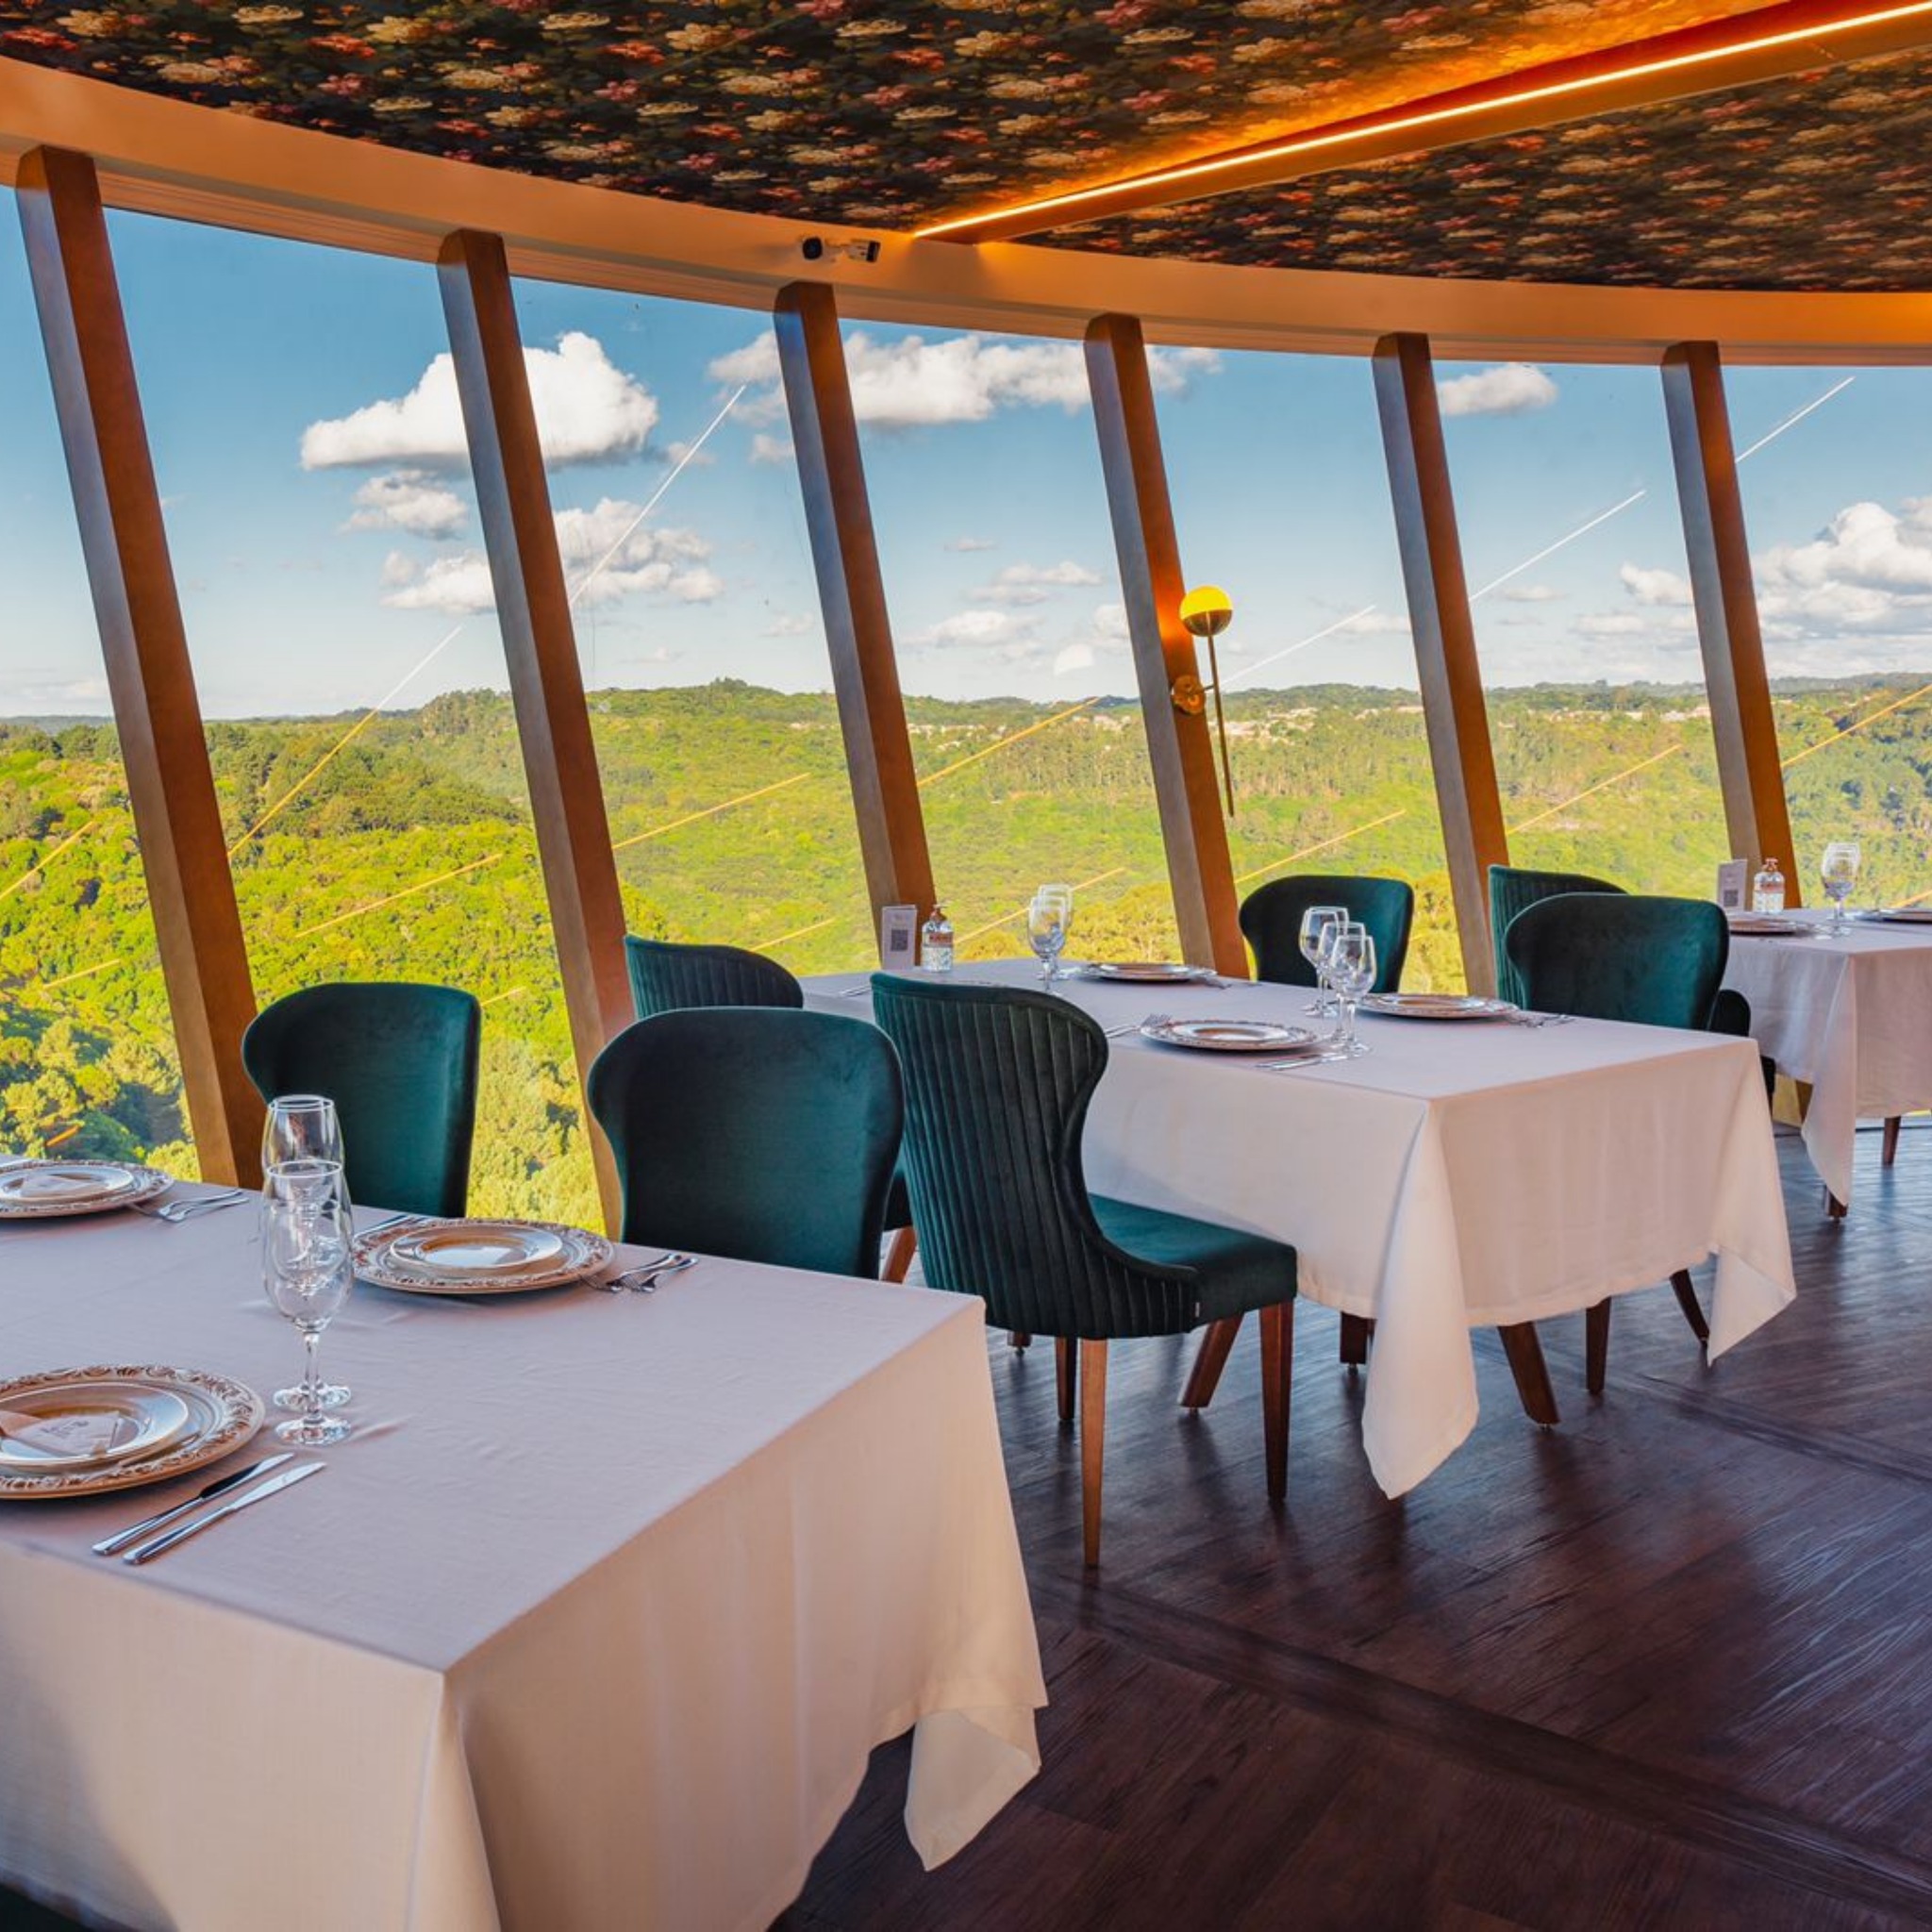 Na imagem vemos o interior de um restaurante. Há várias mesas com toalhas brancas e cadeiras pretas. As paredes do restaurante são feitas de janelas, assim, vemos um vale verde que est[a ao lado do restaurante.